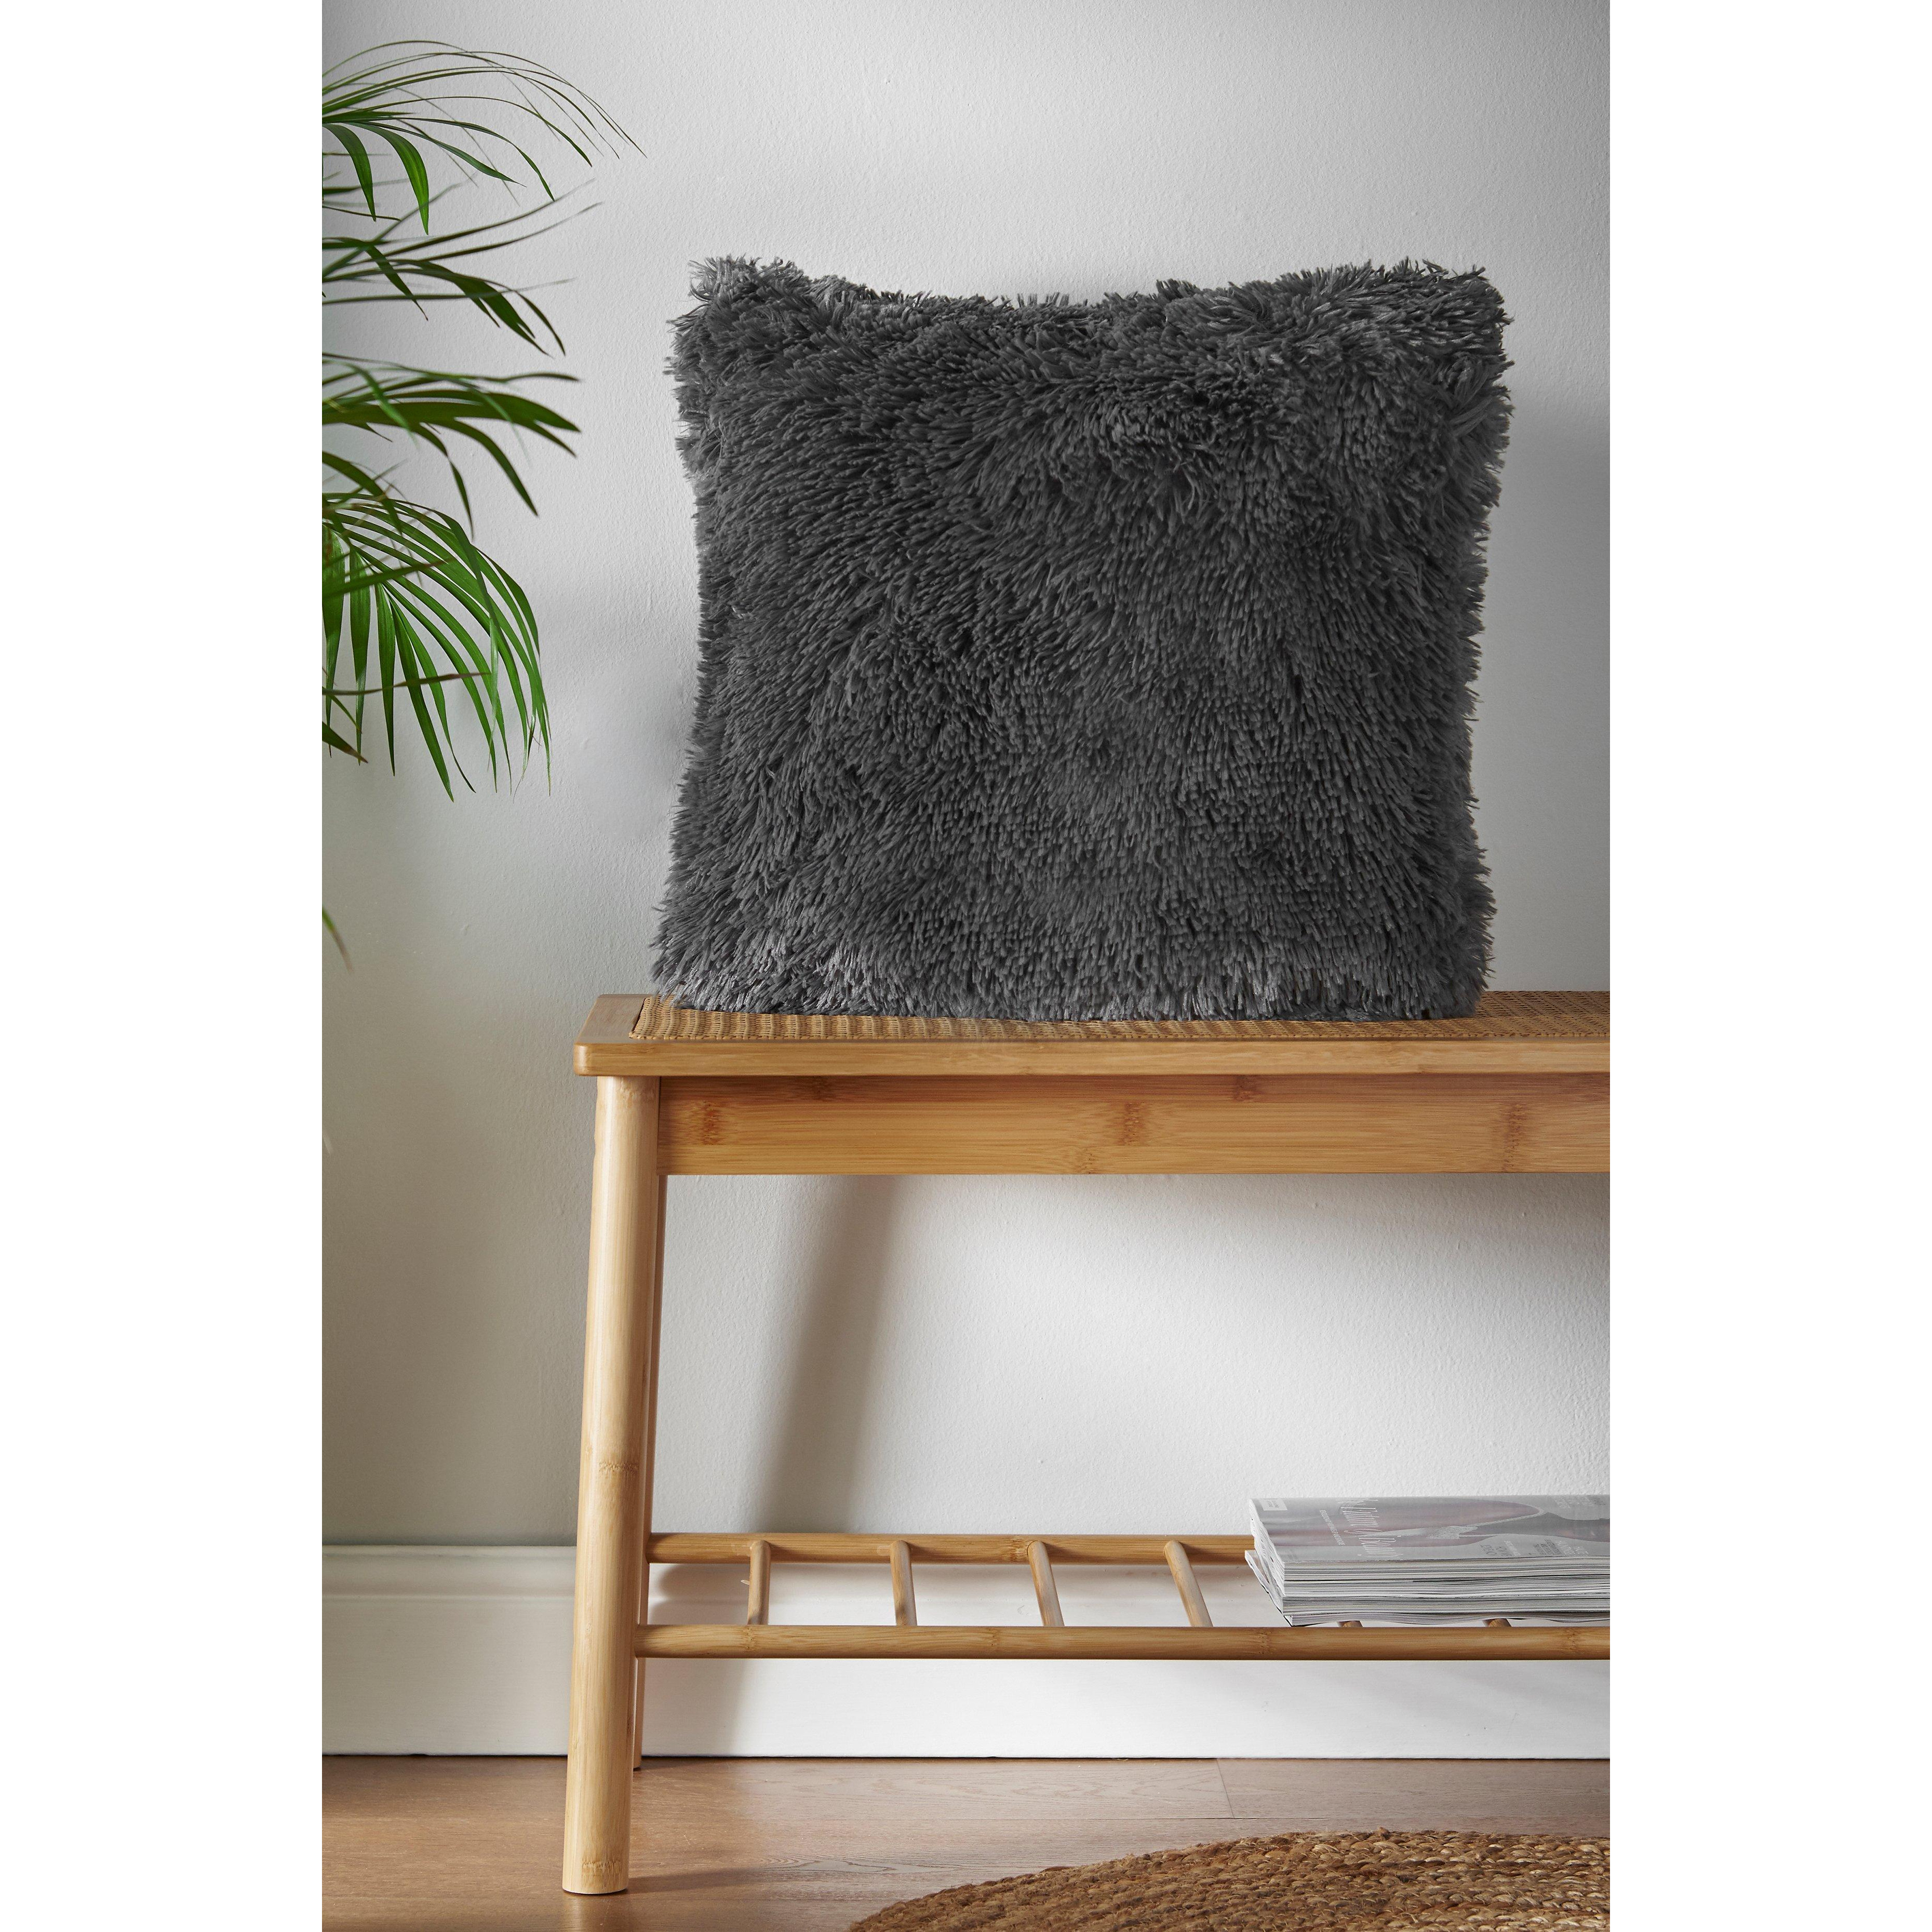 'Cuddly' Faux Fur Cushion - image 1